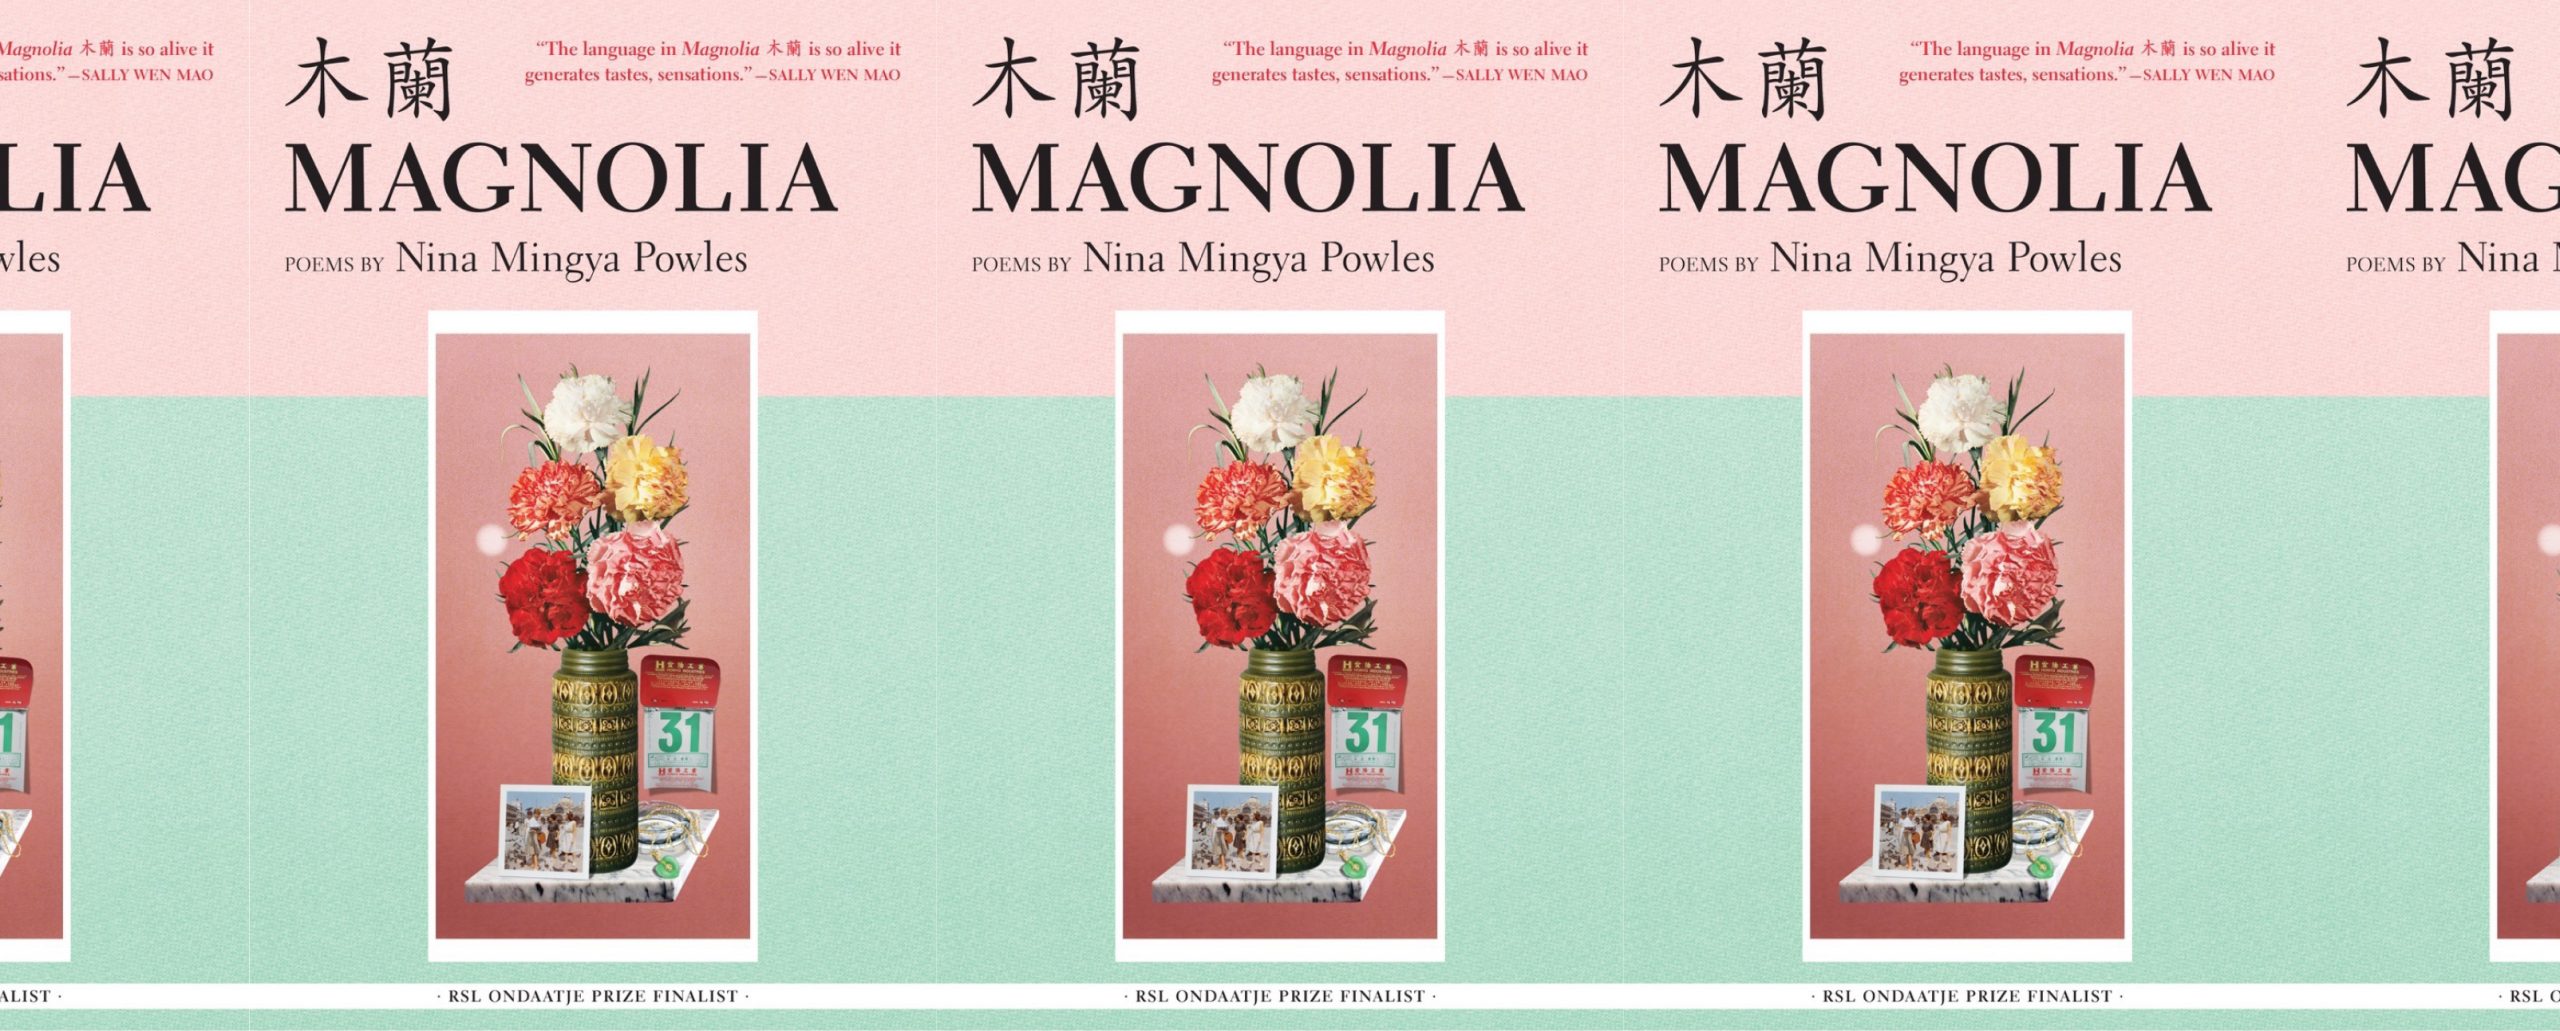 la portada del libro de Magnolia 木蘭, que presenta una pintura de flores en un jarrón con una página de calendario, una fotografía y un brazalete al lado